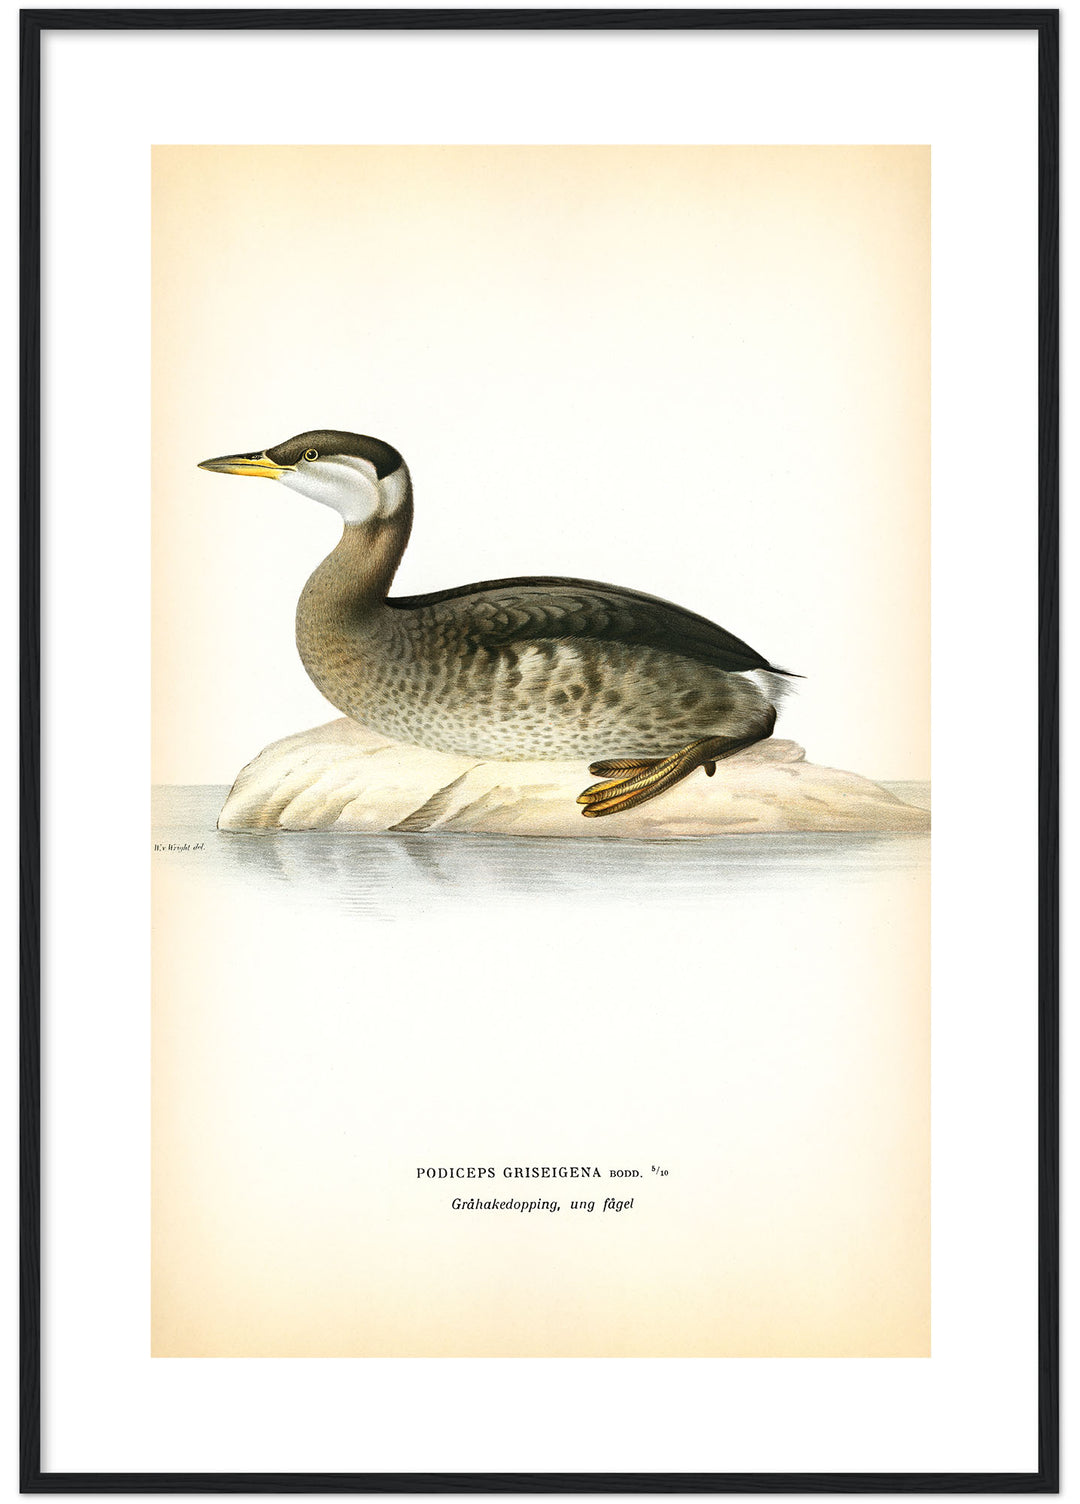 Fågeln Gråhakedopping, ung på klassisk vintage poster/affisch